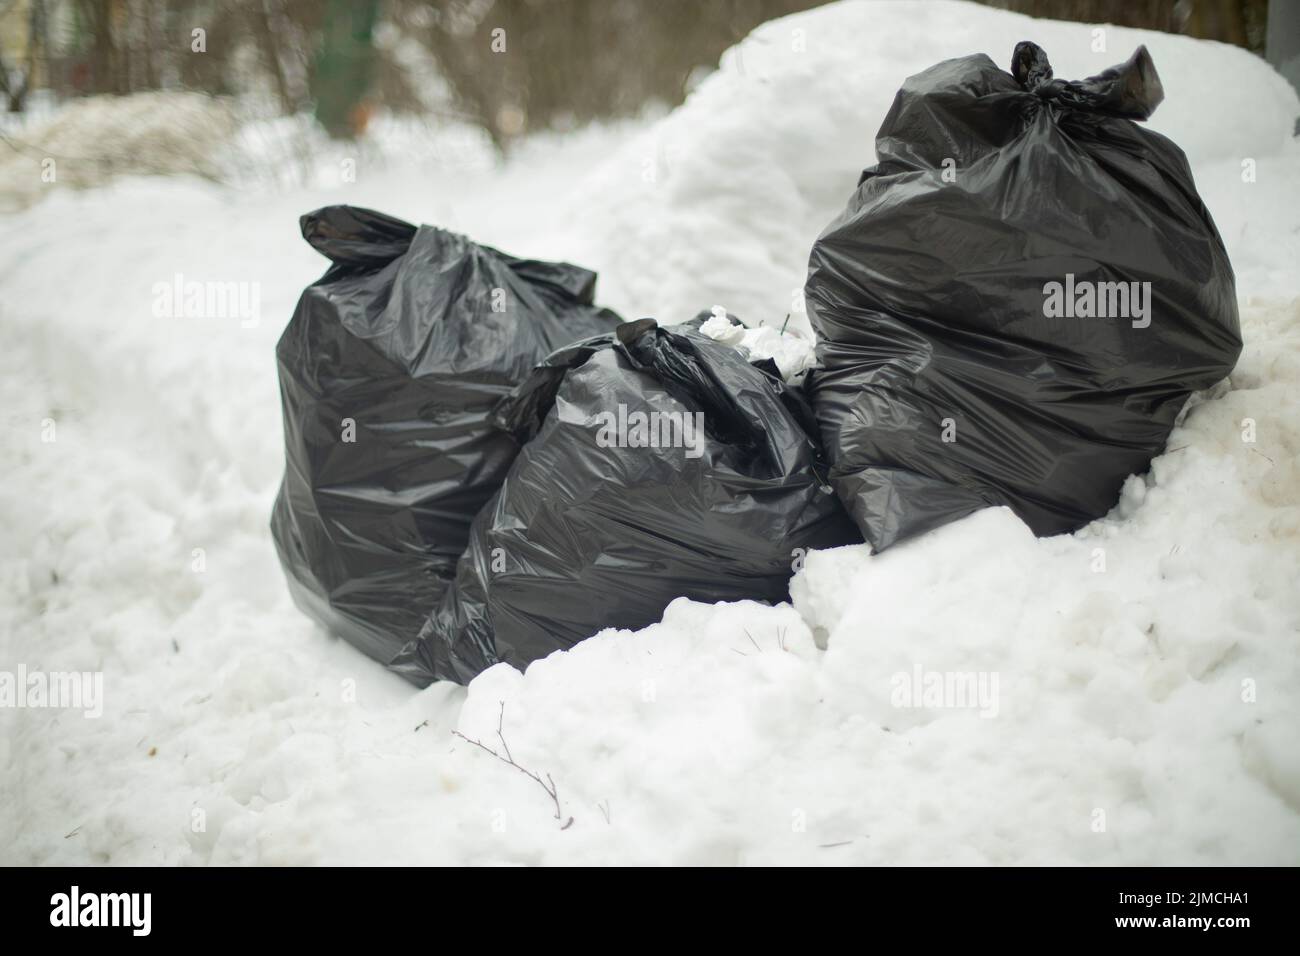 borse-nere-nella-neve-spazzatura-su-strada-rifiuti-in-sacchi-buttare-fuori-spazzatura-su-strada-discarica-illegale-2jmcha1